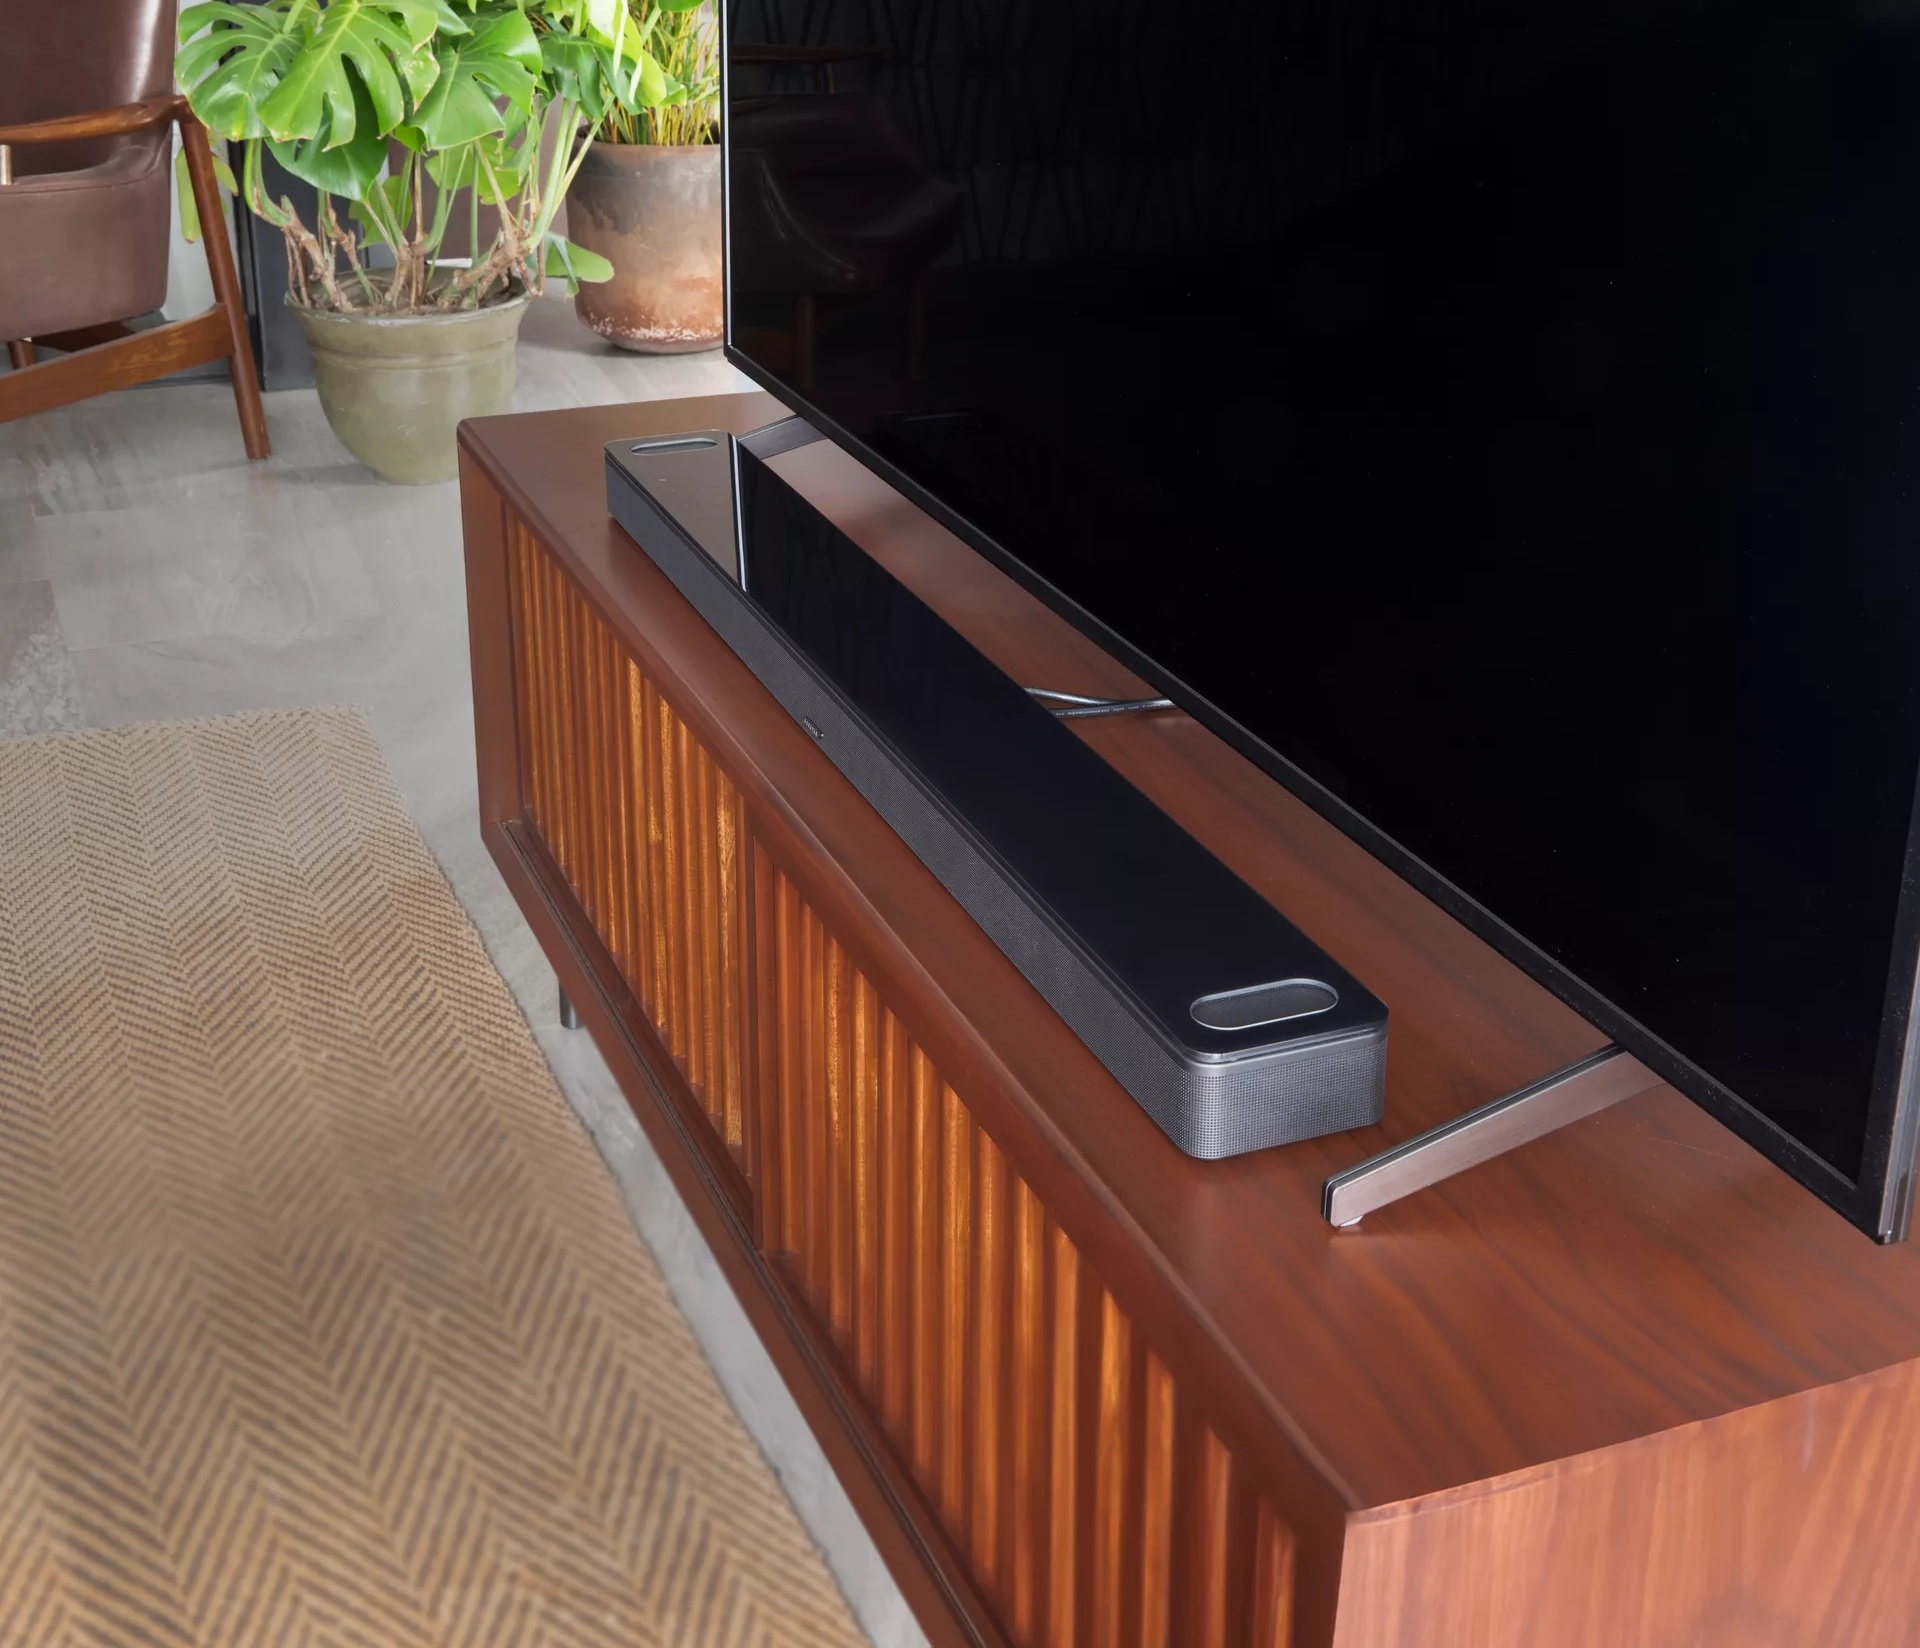 La barre de son intelligente Smart Soundbar 900 sur une console devant un téléviseur